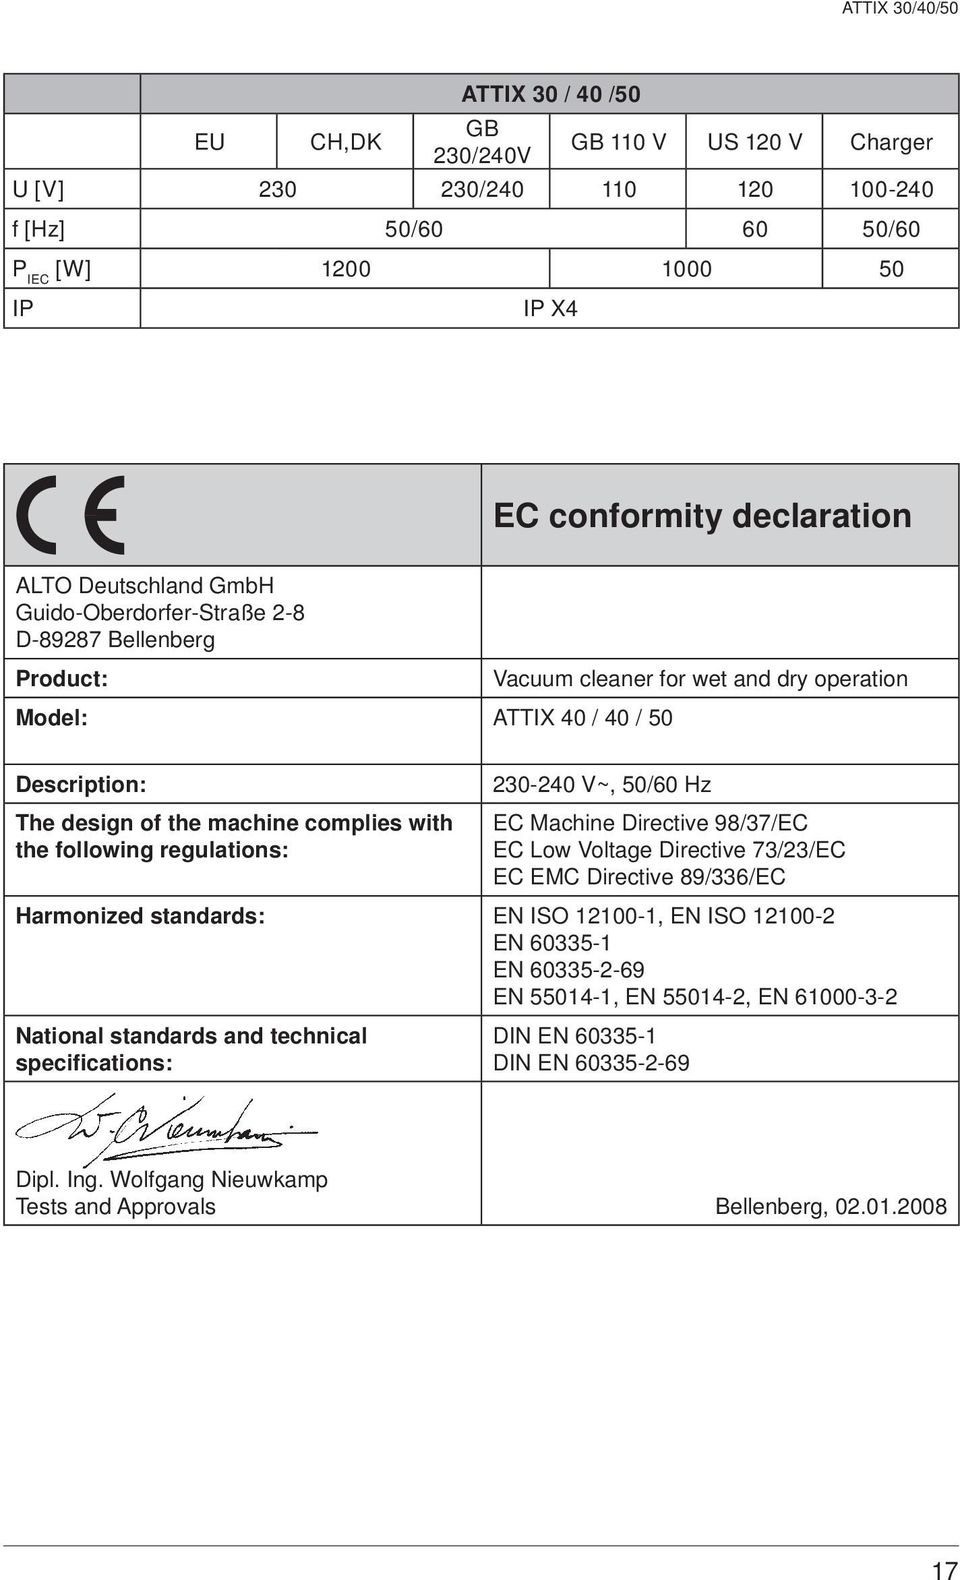 regulations: 230-240 V~, 50/60 Hz EC Machine Directive 98/37/EC EC Low Voltage Directive 73/23/EC EC EMC Directive 89/336/EC Harmonized standards: EN ISO 12100-1, EN ISO 12100-2 EN 60335-1 EN